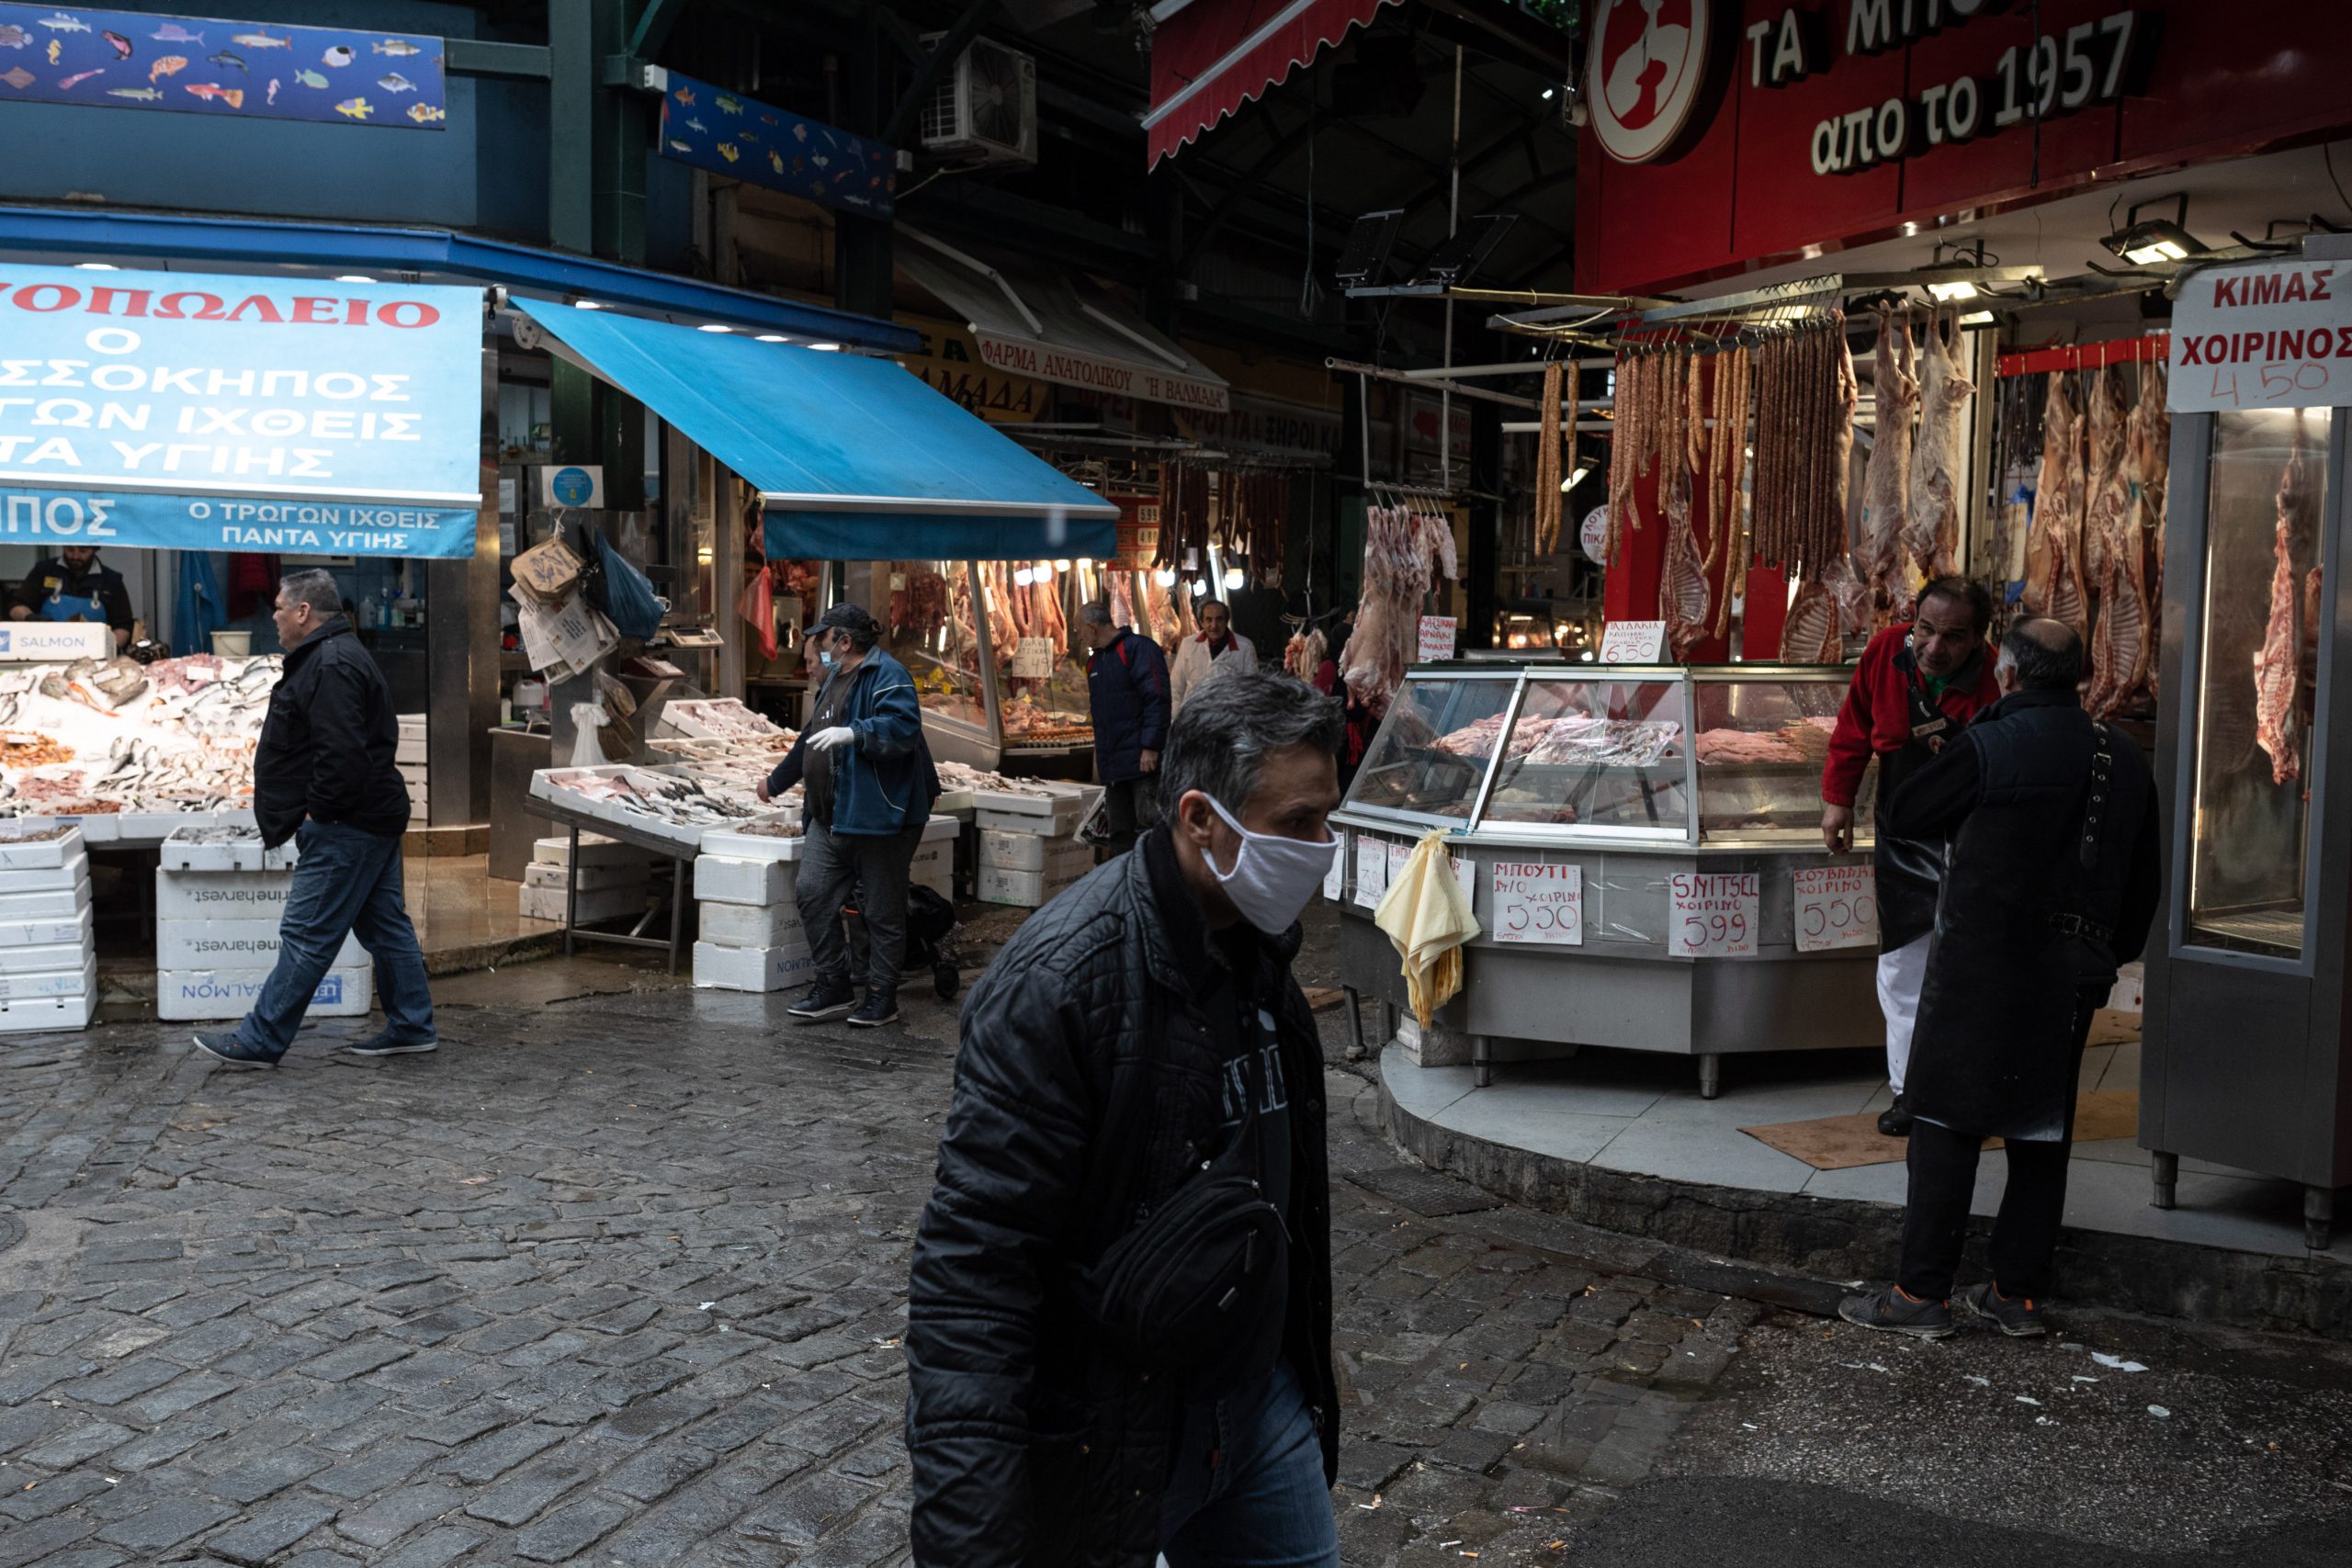 Θεσσαλονίκη – Καπάνι: Υπογραφή σύμβασης για την ανάπλαση της ιστορικής αγοράς